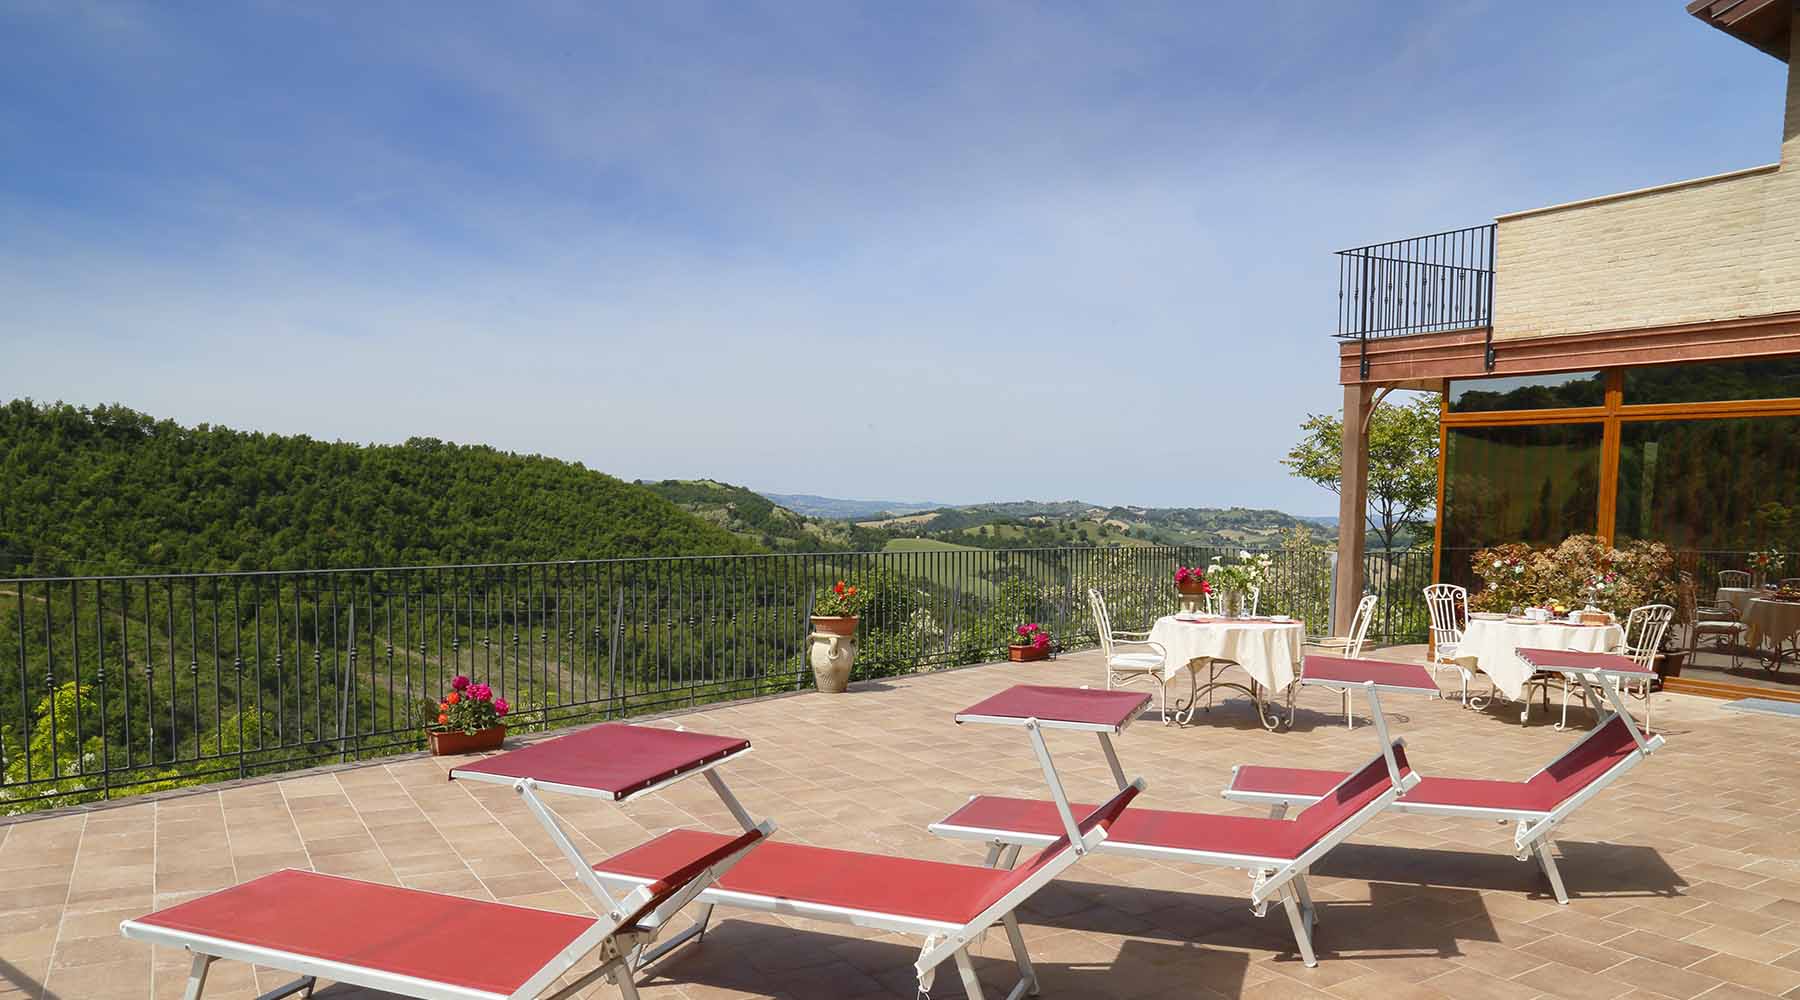 Terrazza sul bosco Albergo - Hotel - Urbino - Marche - SPA - Centro Benessere - Hotel a Urbino